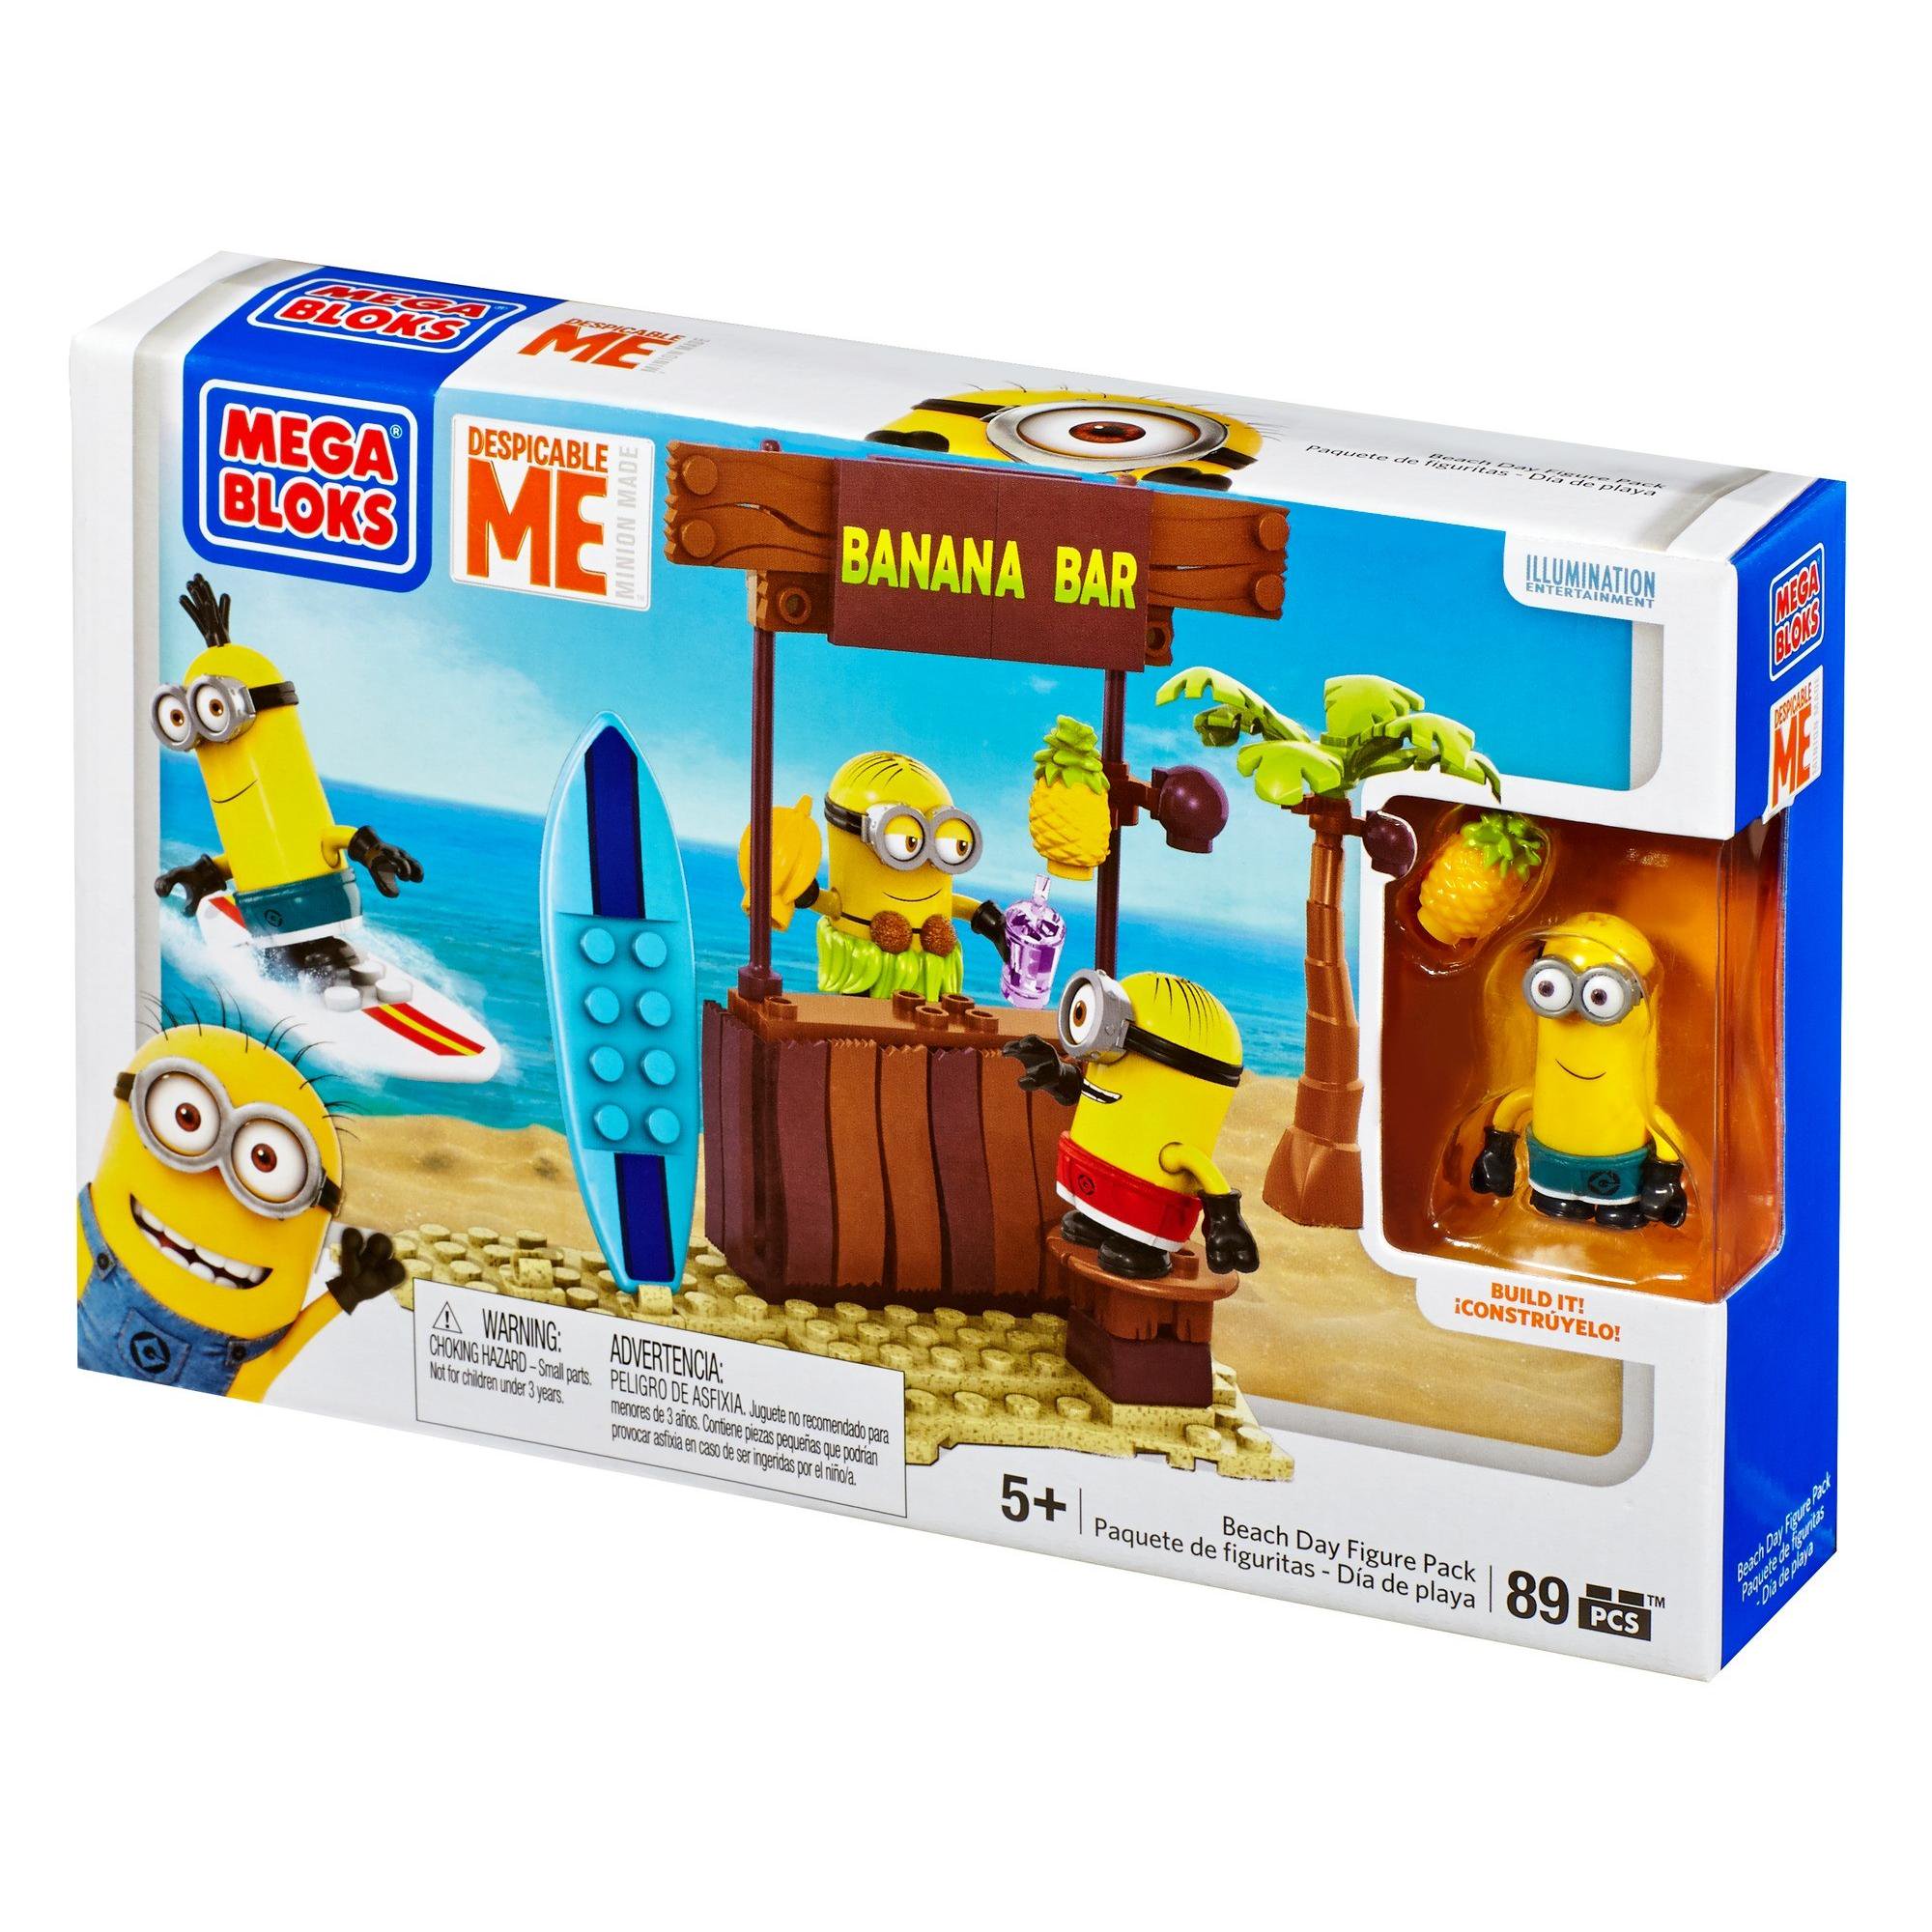 Minions Mega Bloks 89-Piece Construction Set, Despicable Beach Day Figure Pack